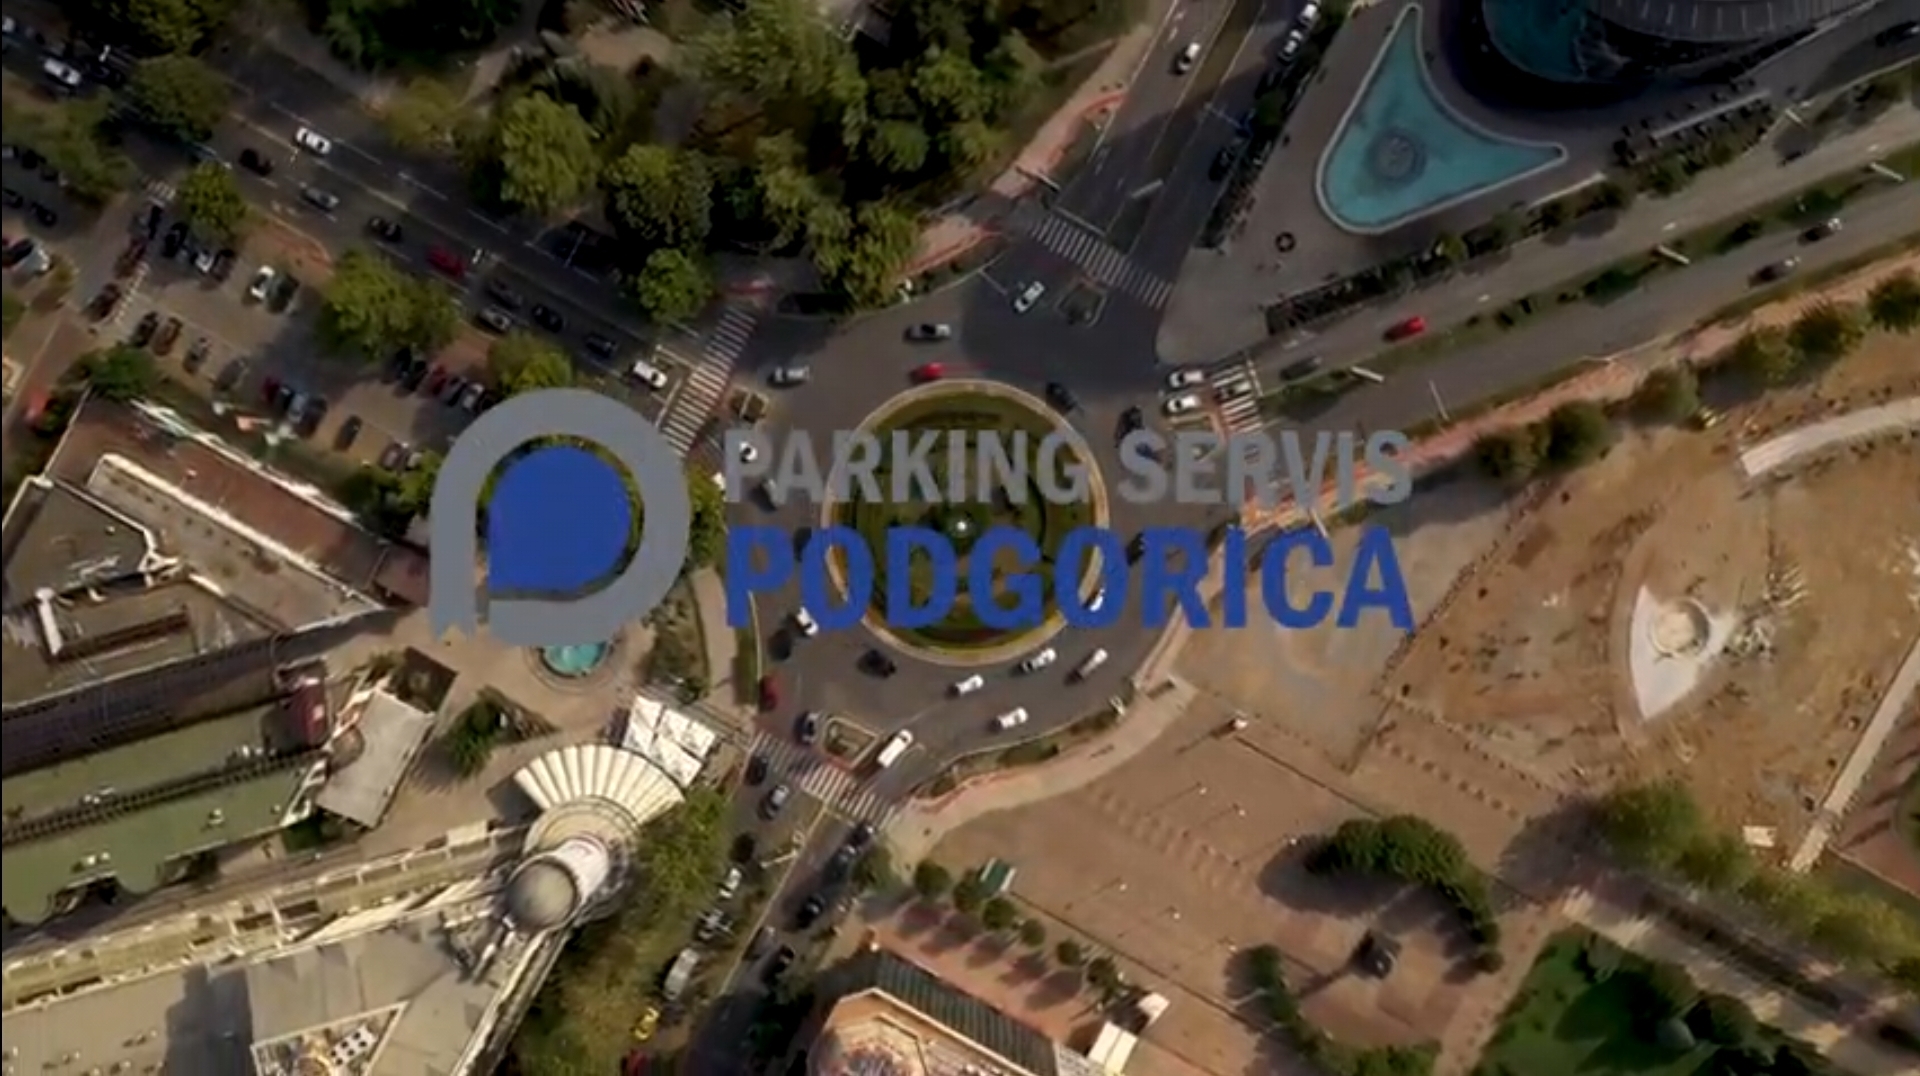 Kroz mobilnu aplikaciju Parking servisa Podgorica brzo i lako do svih informacija